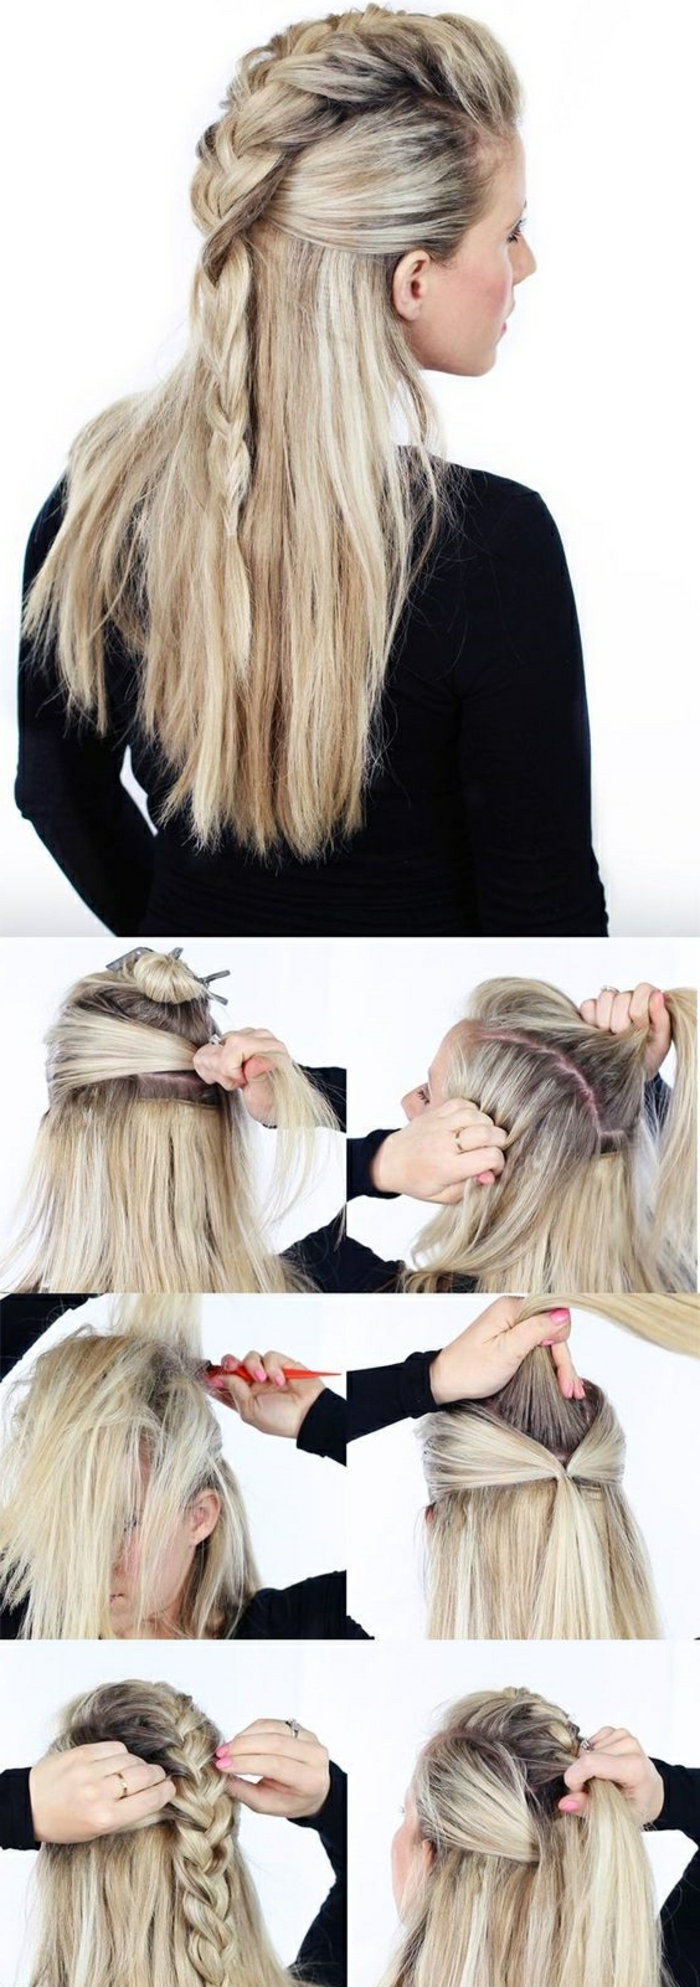 vikings lagertha, cheveux blonds, manucure rose, tutoriel comment faire une coiffure viking, tresse en haut